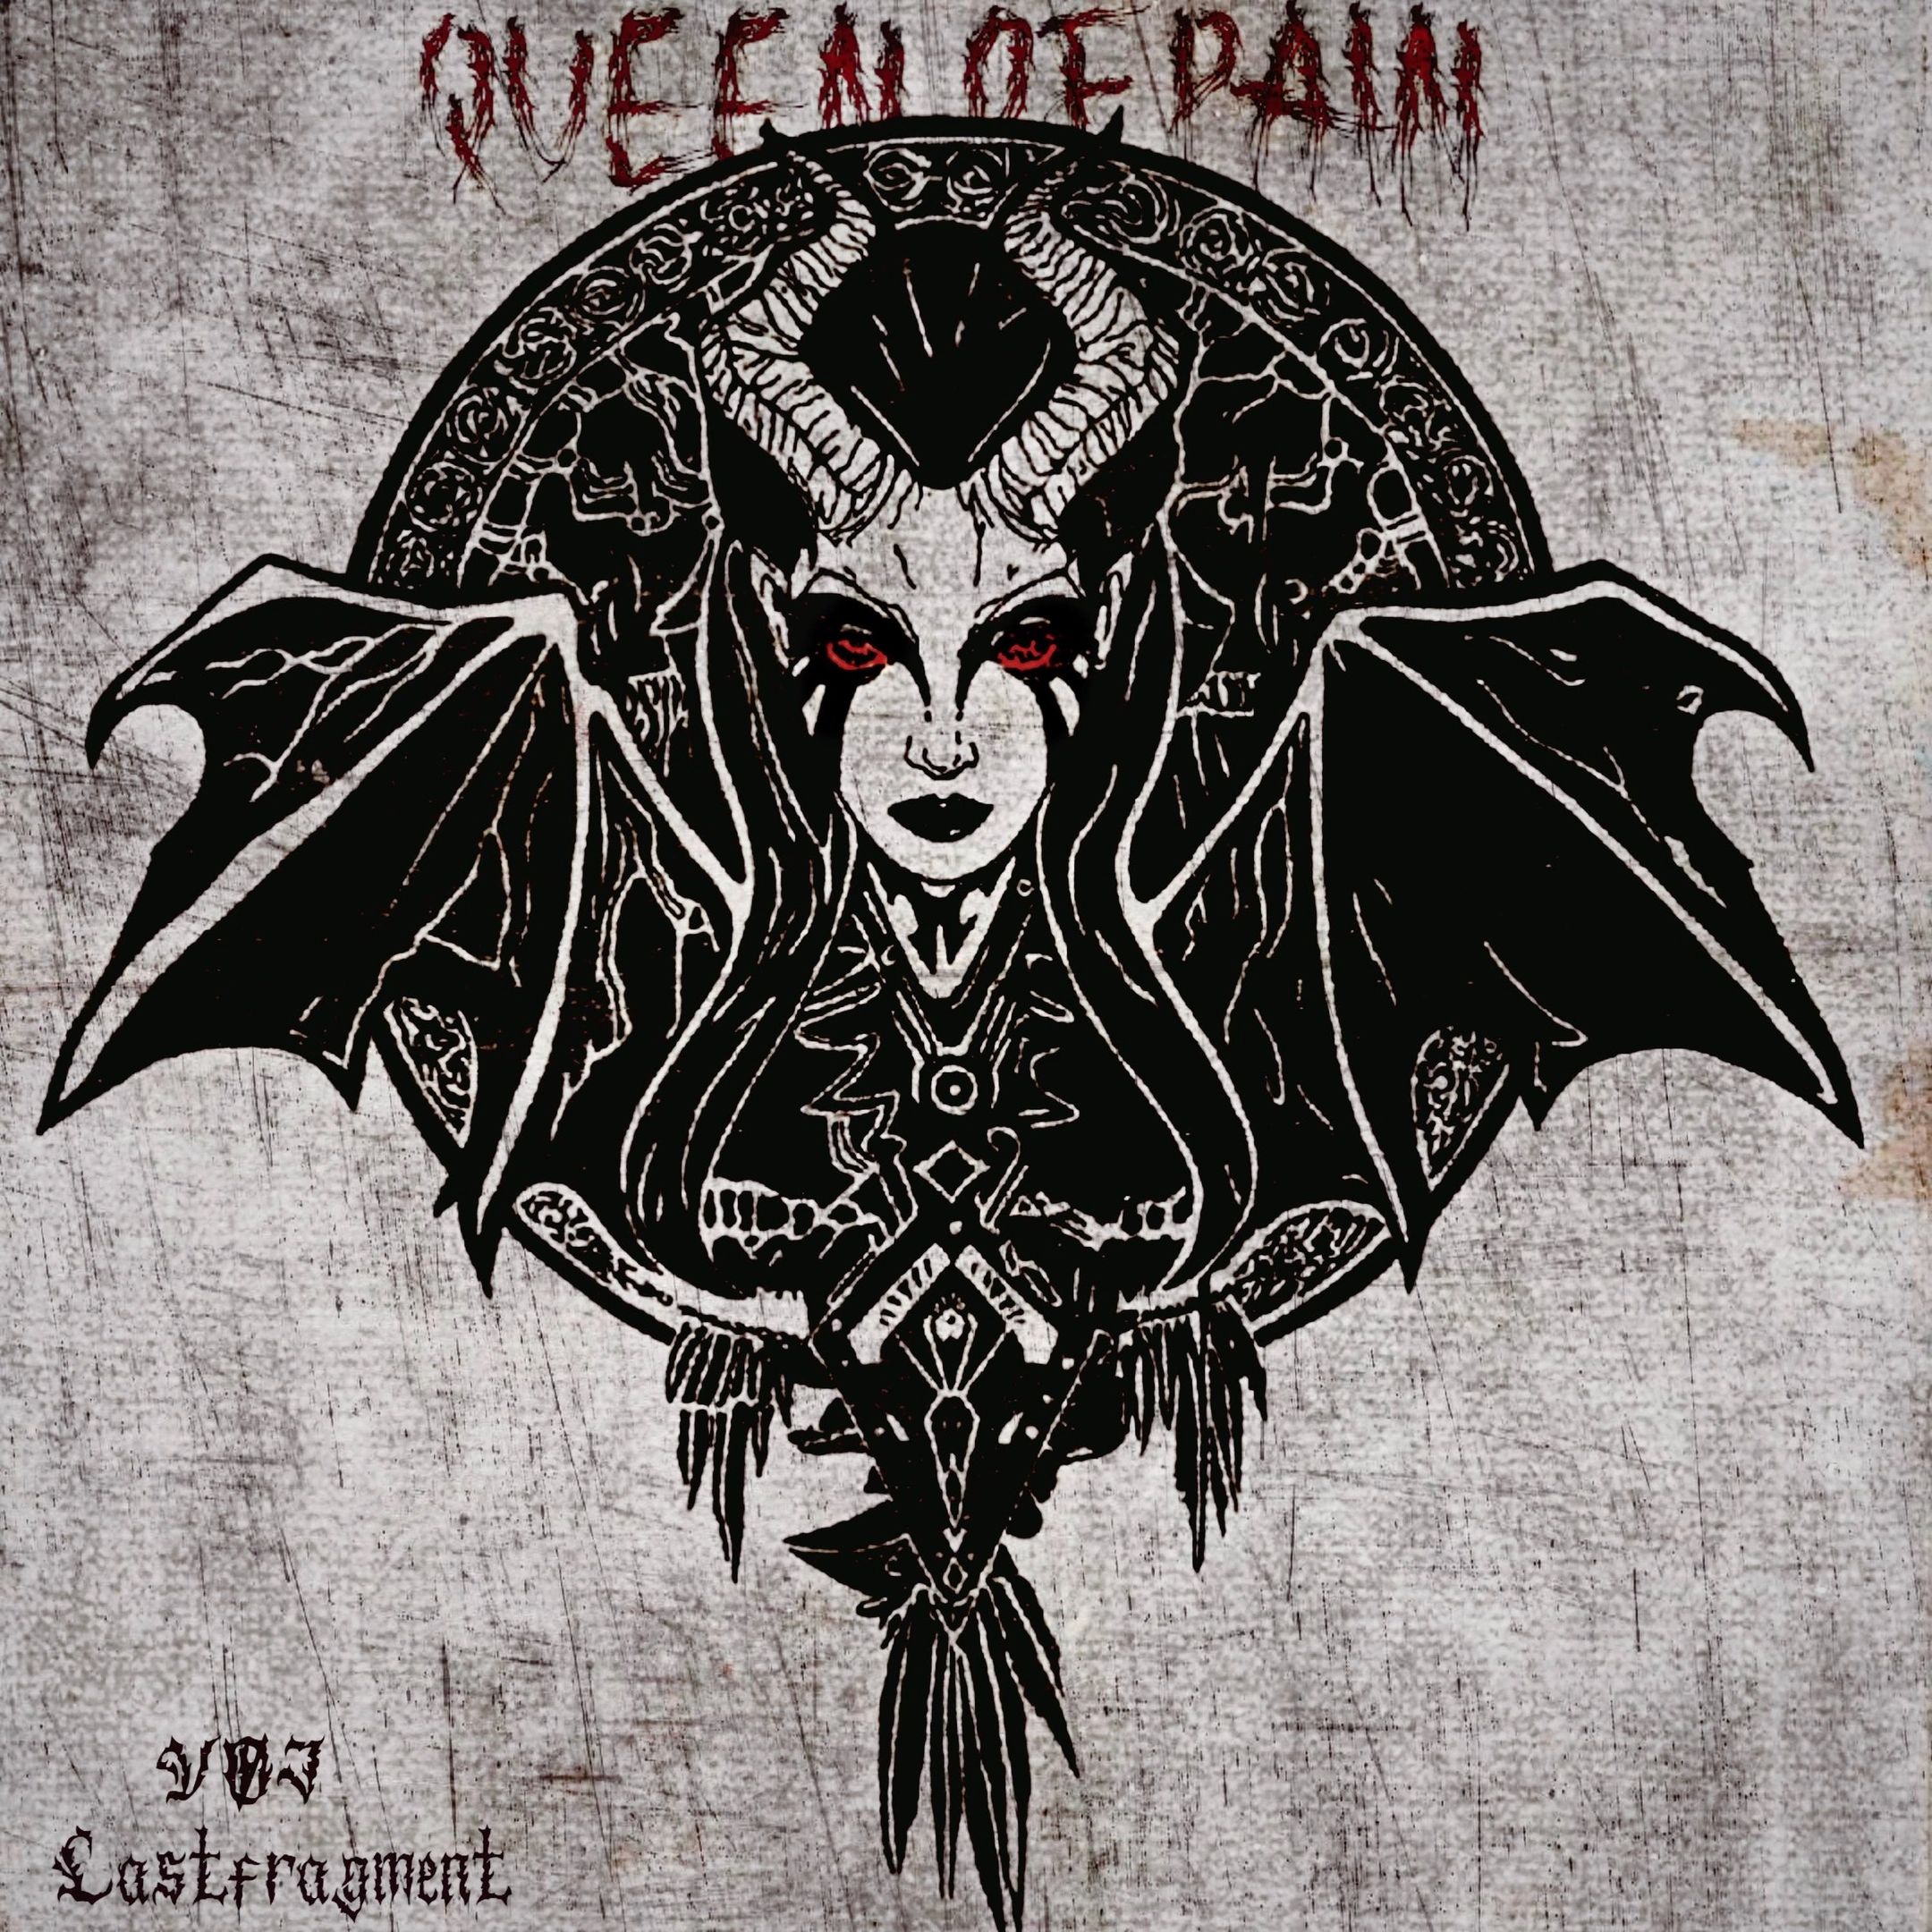 Завантажити VØJ & Lastfragment - Queen of Pain